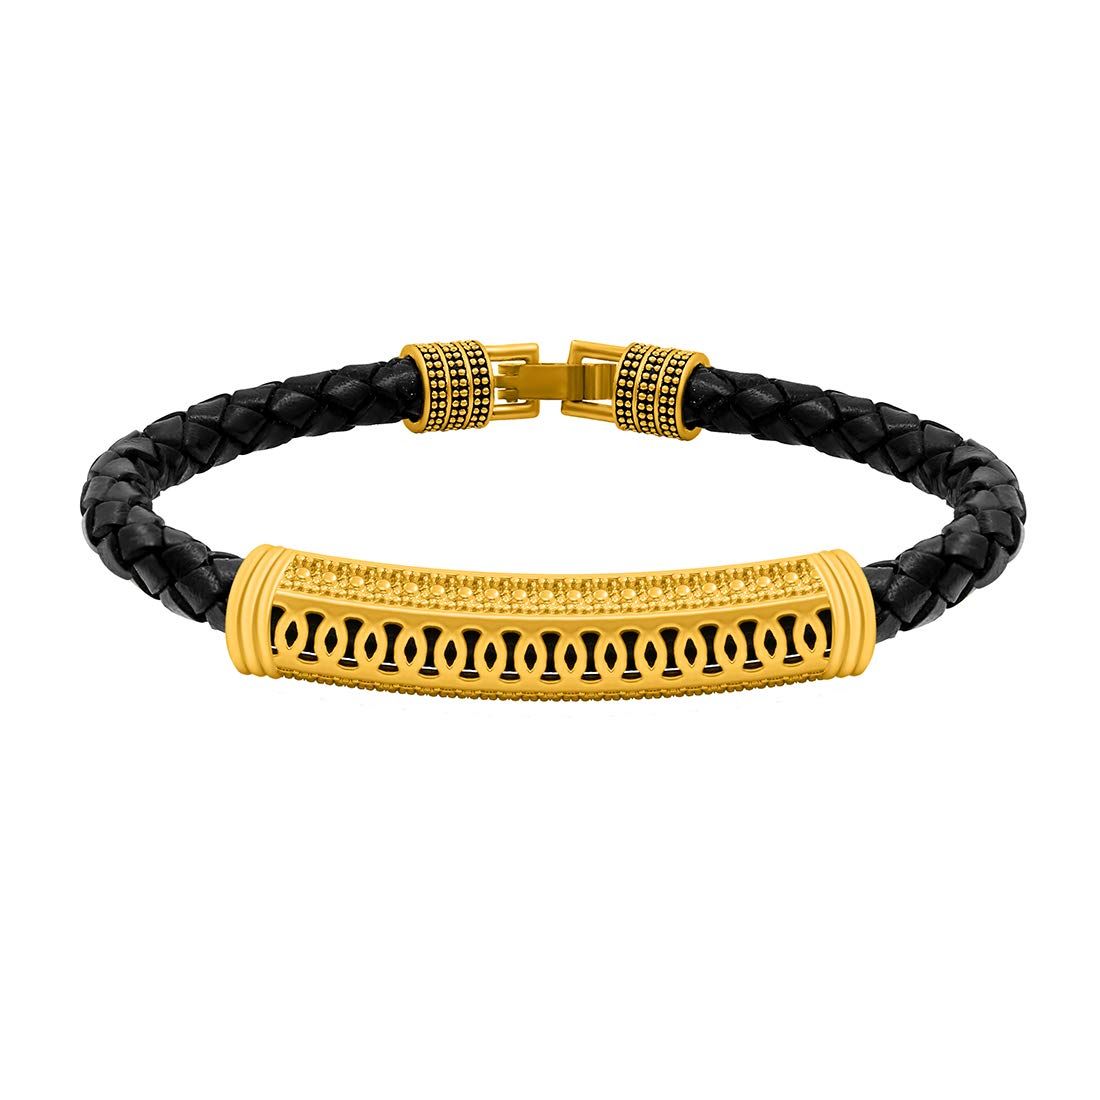 Bracelet for Men Boys Silver Stainless Steel Curb Design Fashion - BeBold -  1445114